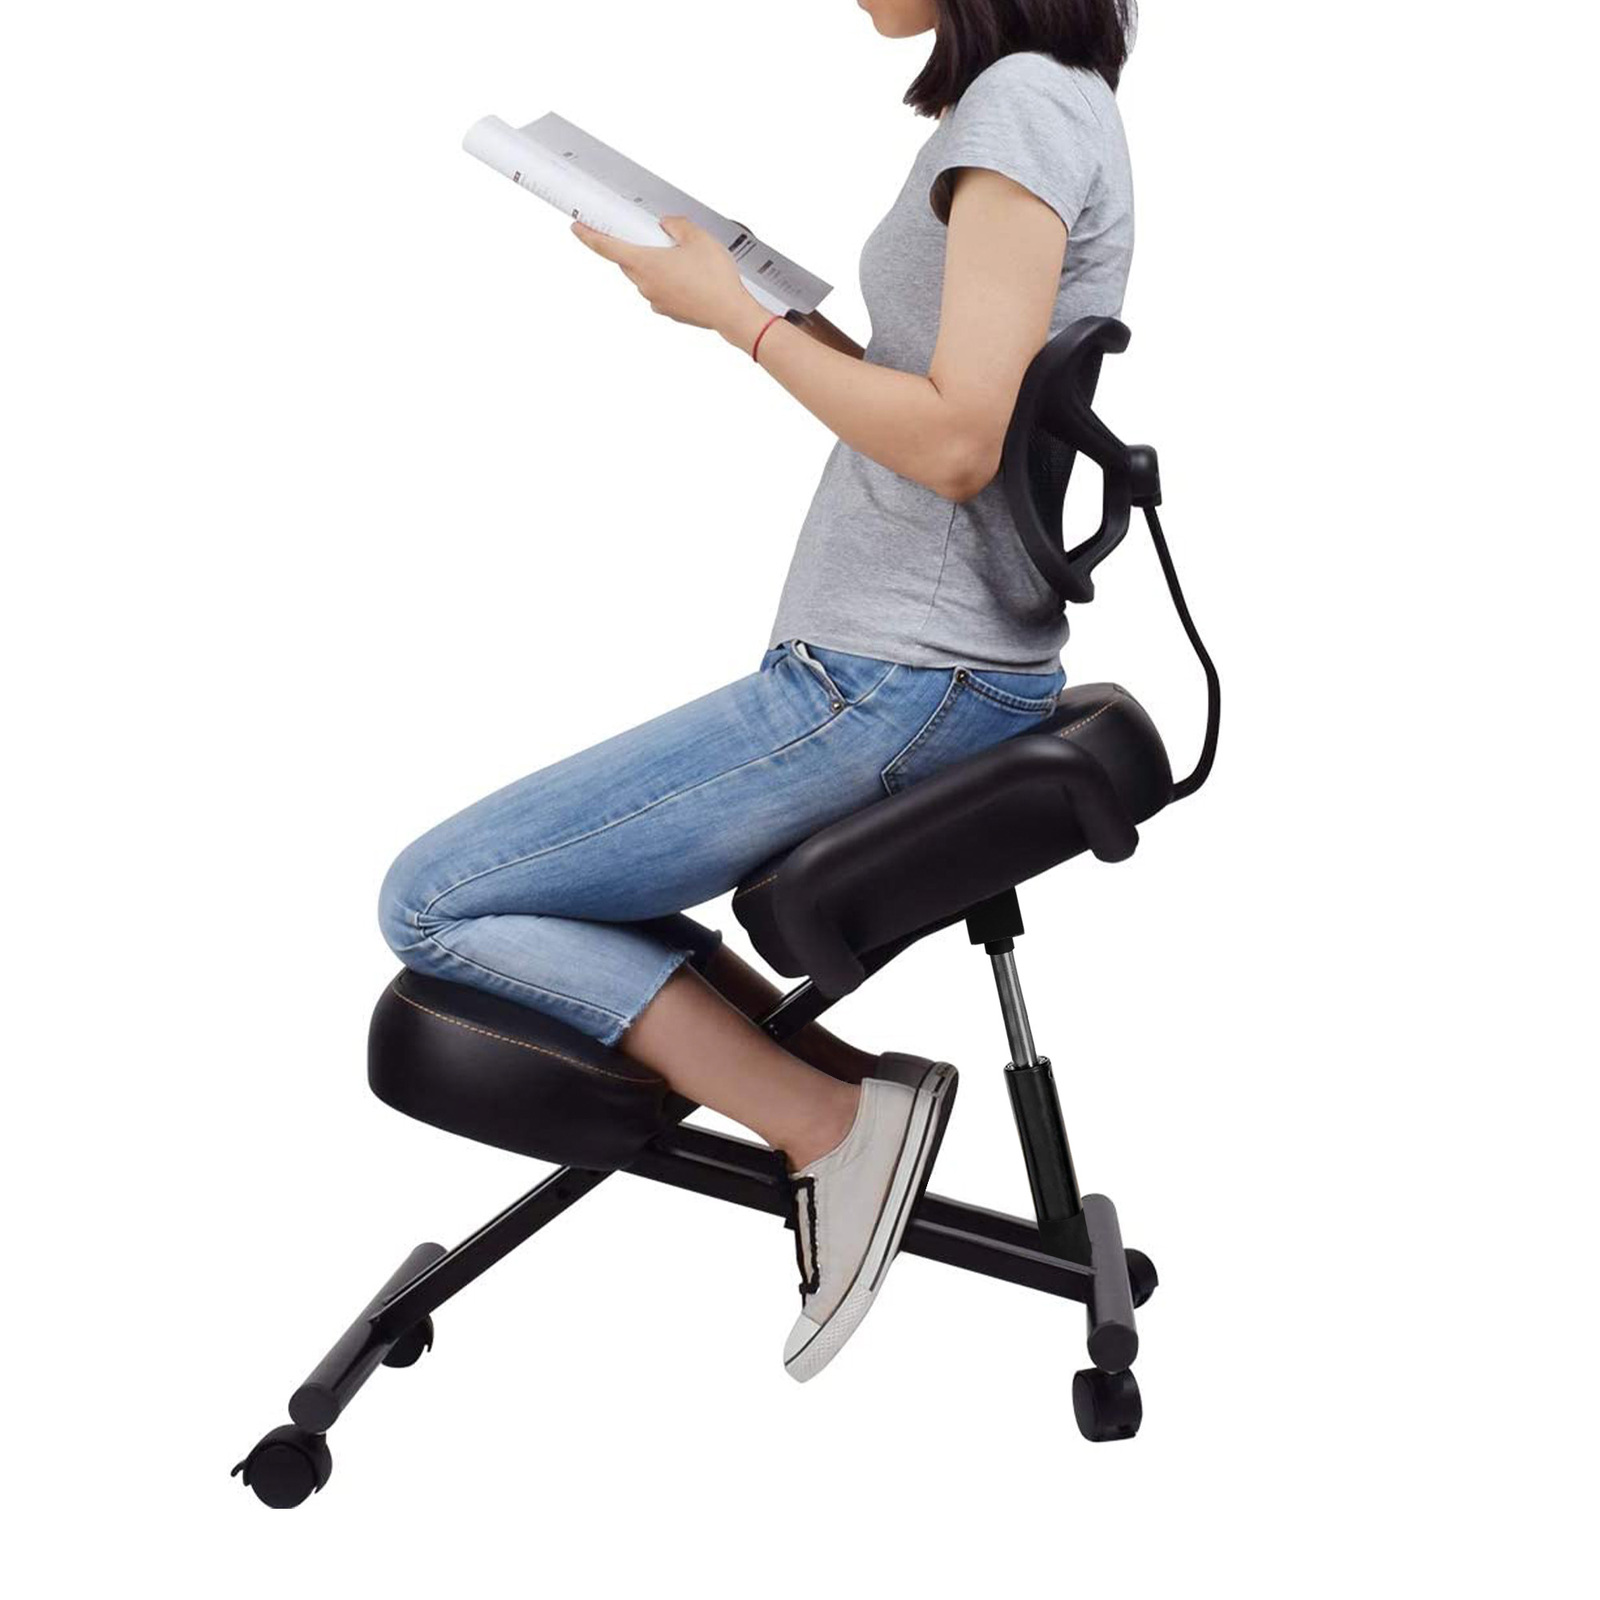 Ergonomic Kneeling Chair Adjustable Stool Kneeling Pad For Back Posture with Backrest